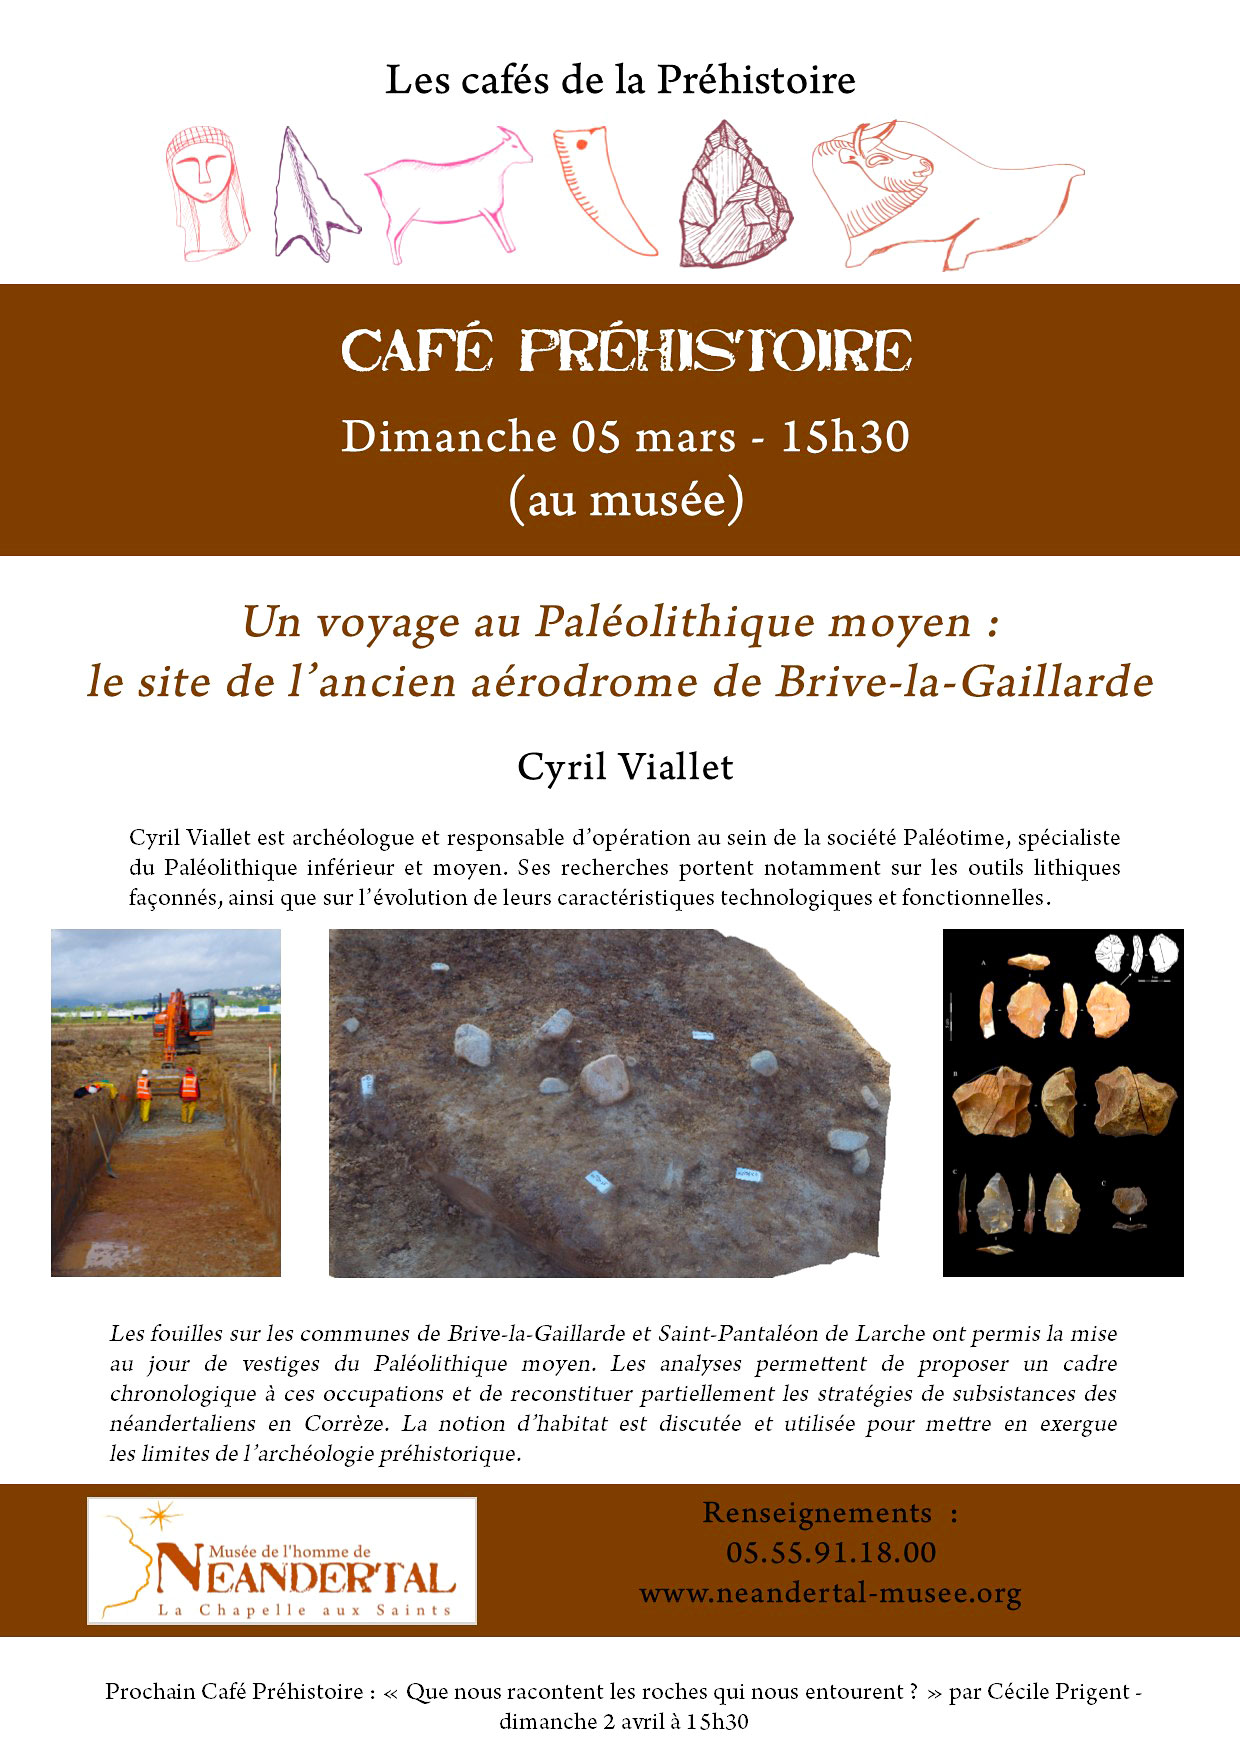 Un voyage au Paléolithique moyen : le site de l’ancien aérodrome de Brive-la-Gaillarde